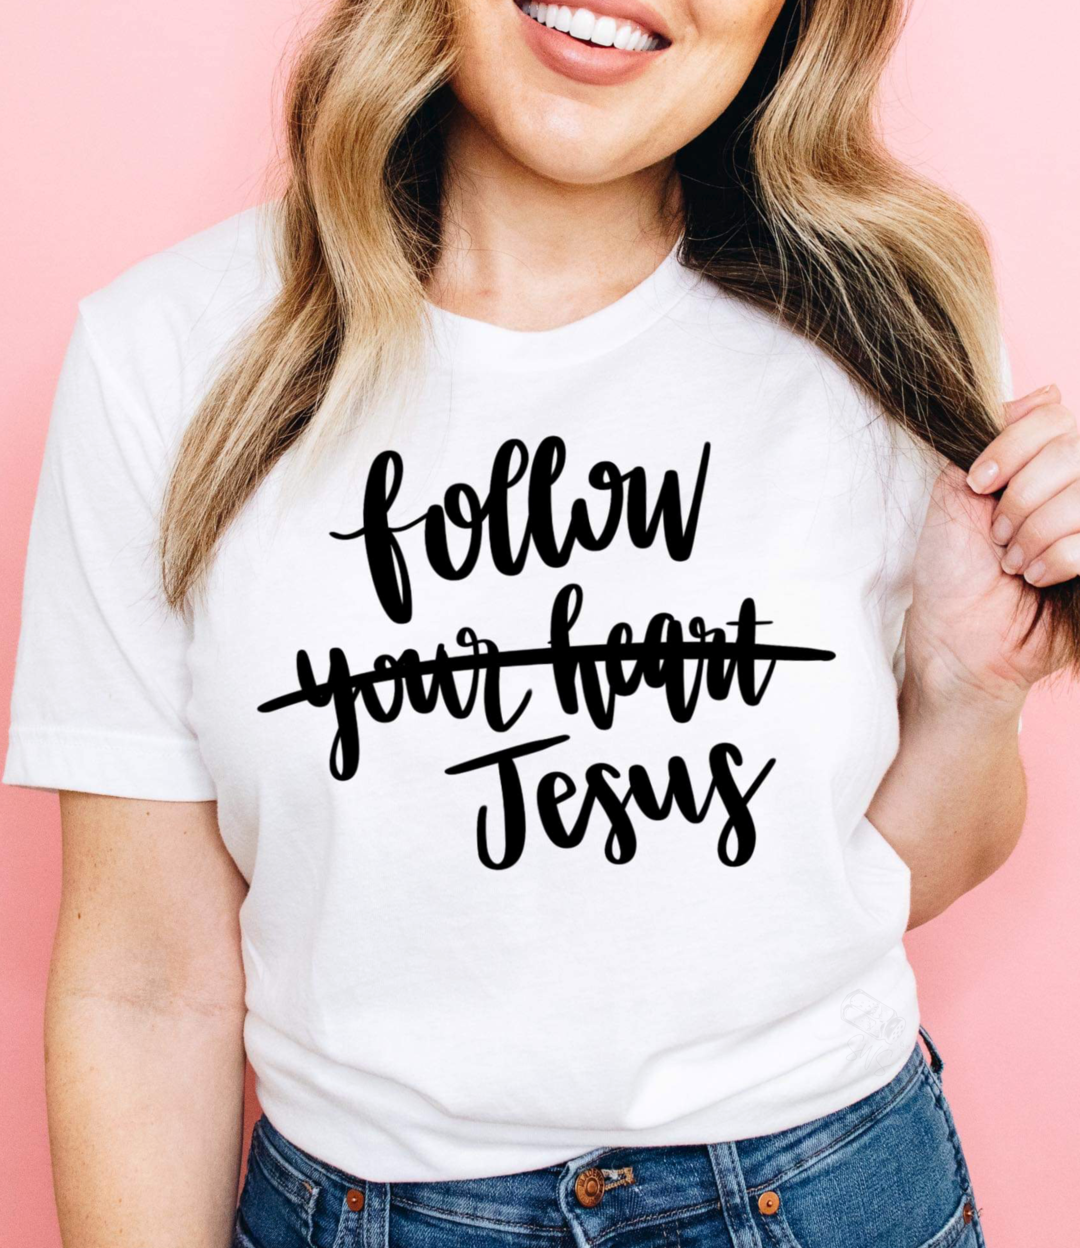 Follow Jesus (your heart)